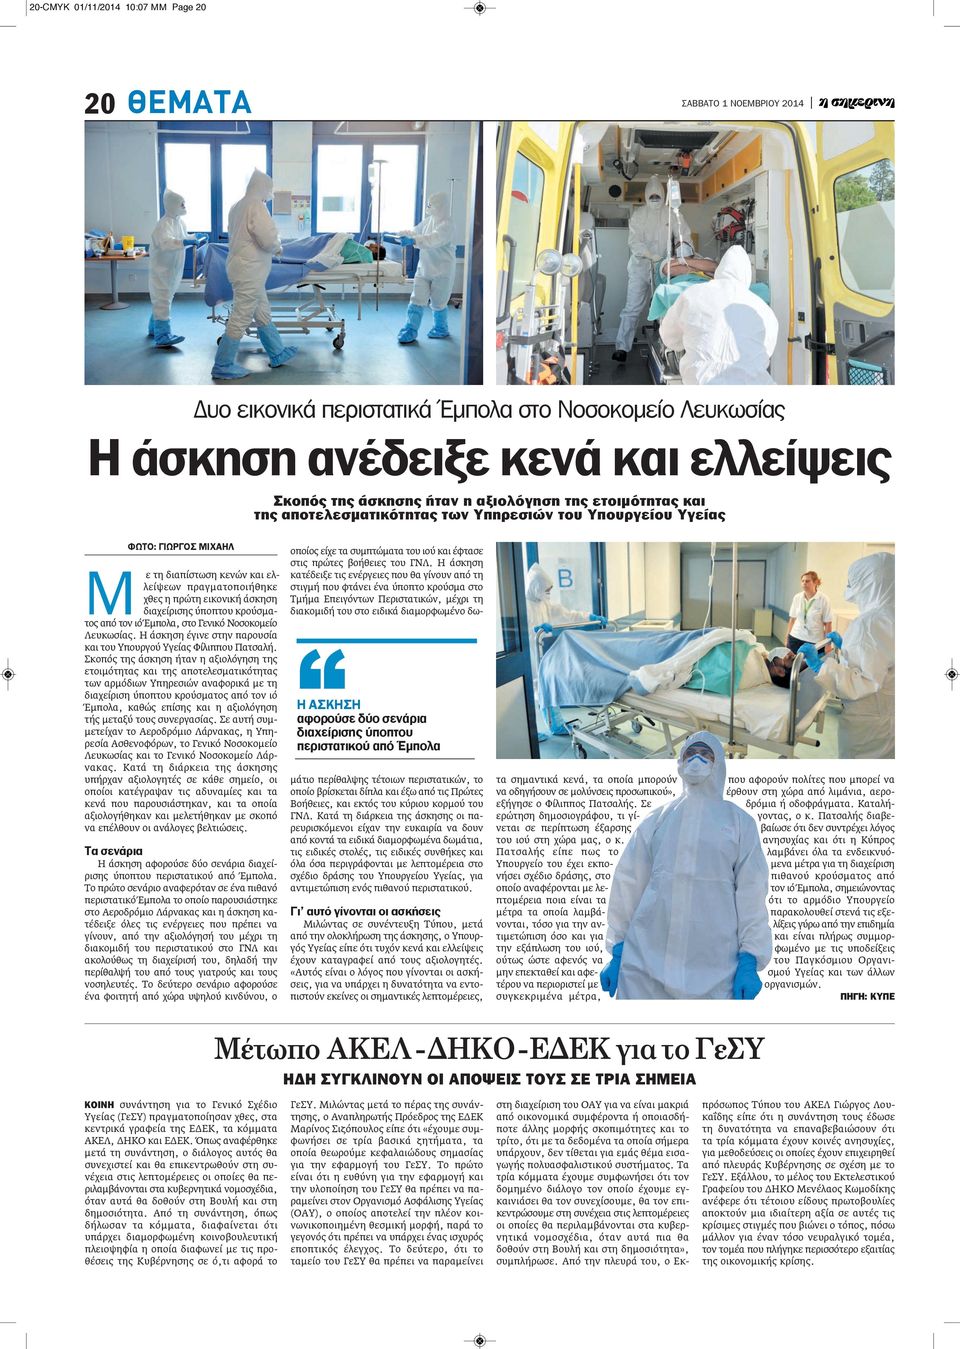 τον ιό Έμπολα, στο Γενικό Νοσοκομείο Λευκωσίας. Η άσκηση έγινε στην παρουσία και του Υπουργού Υγείας Φίλιππου Πατσαλή.